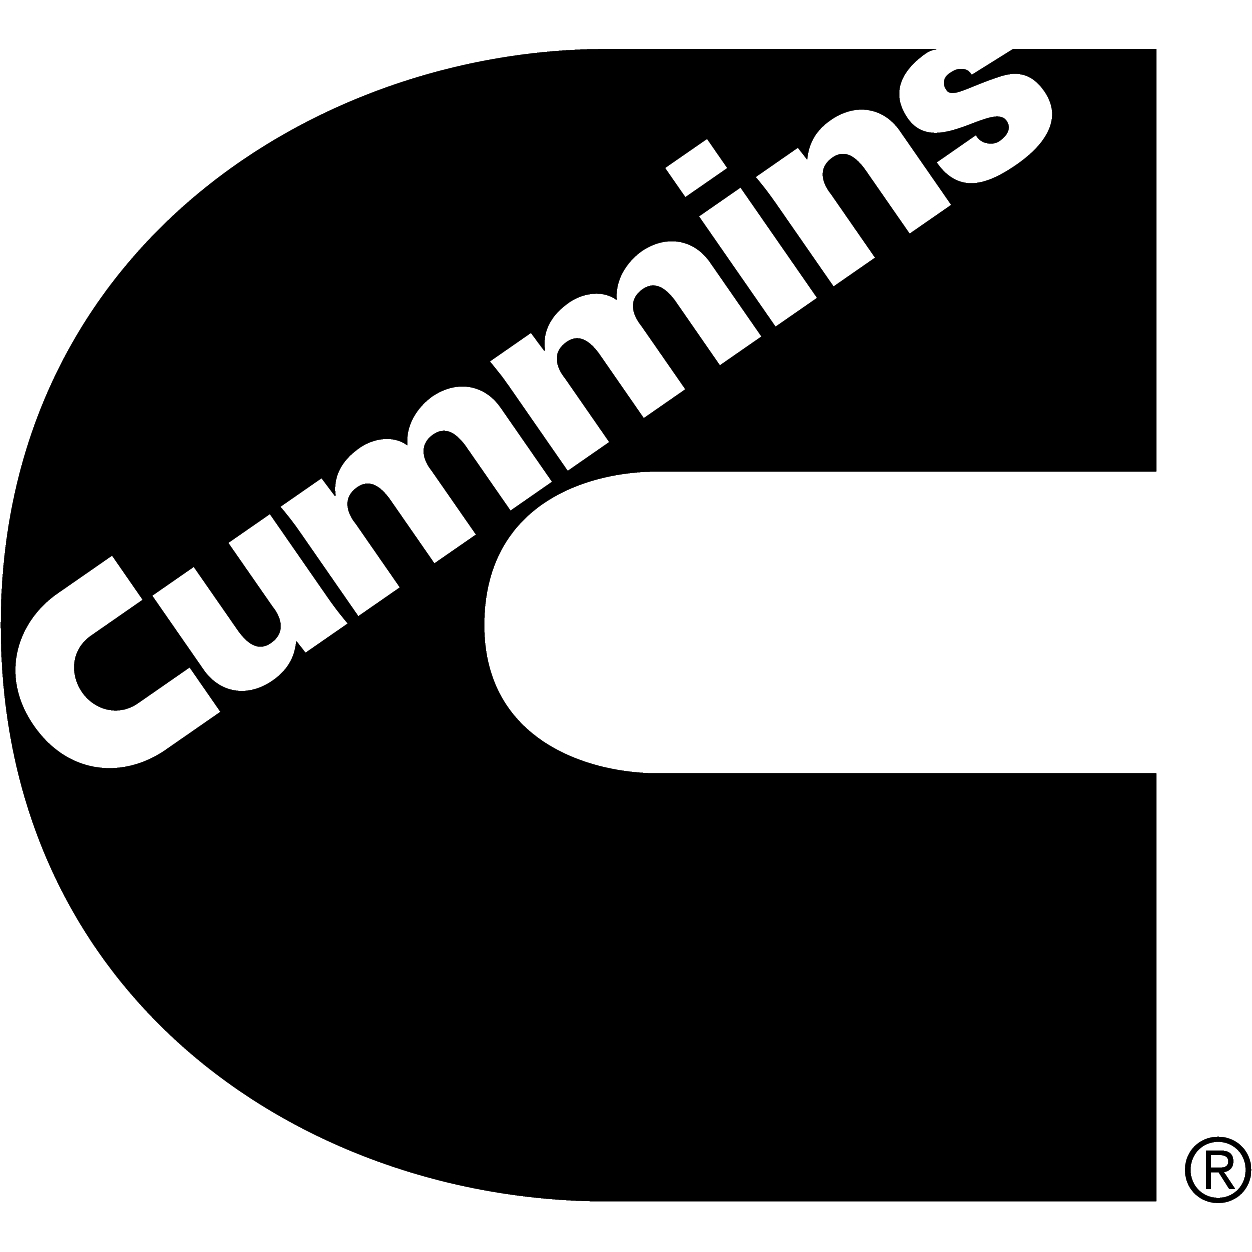 Cummins Sales and Service - Entretien et réparation de camions